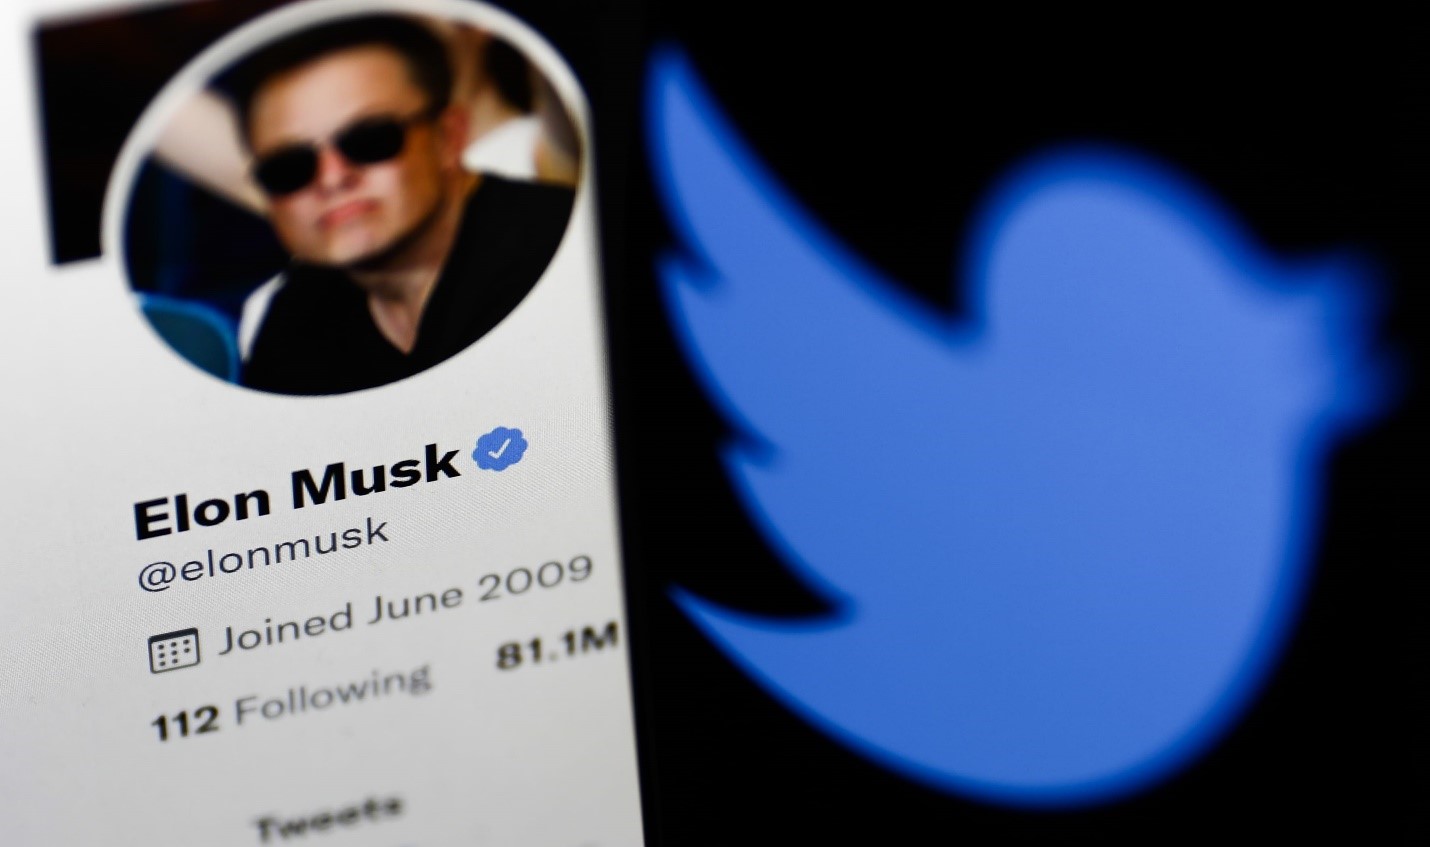 Elon Musk joins Twitter.